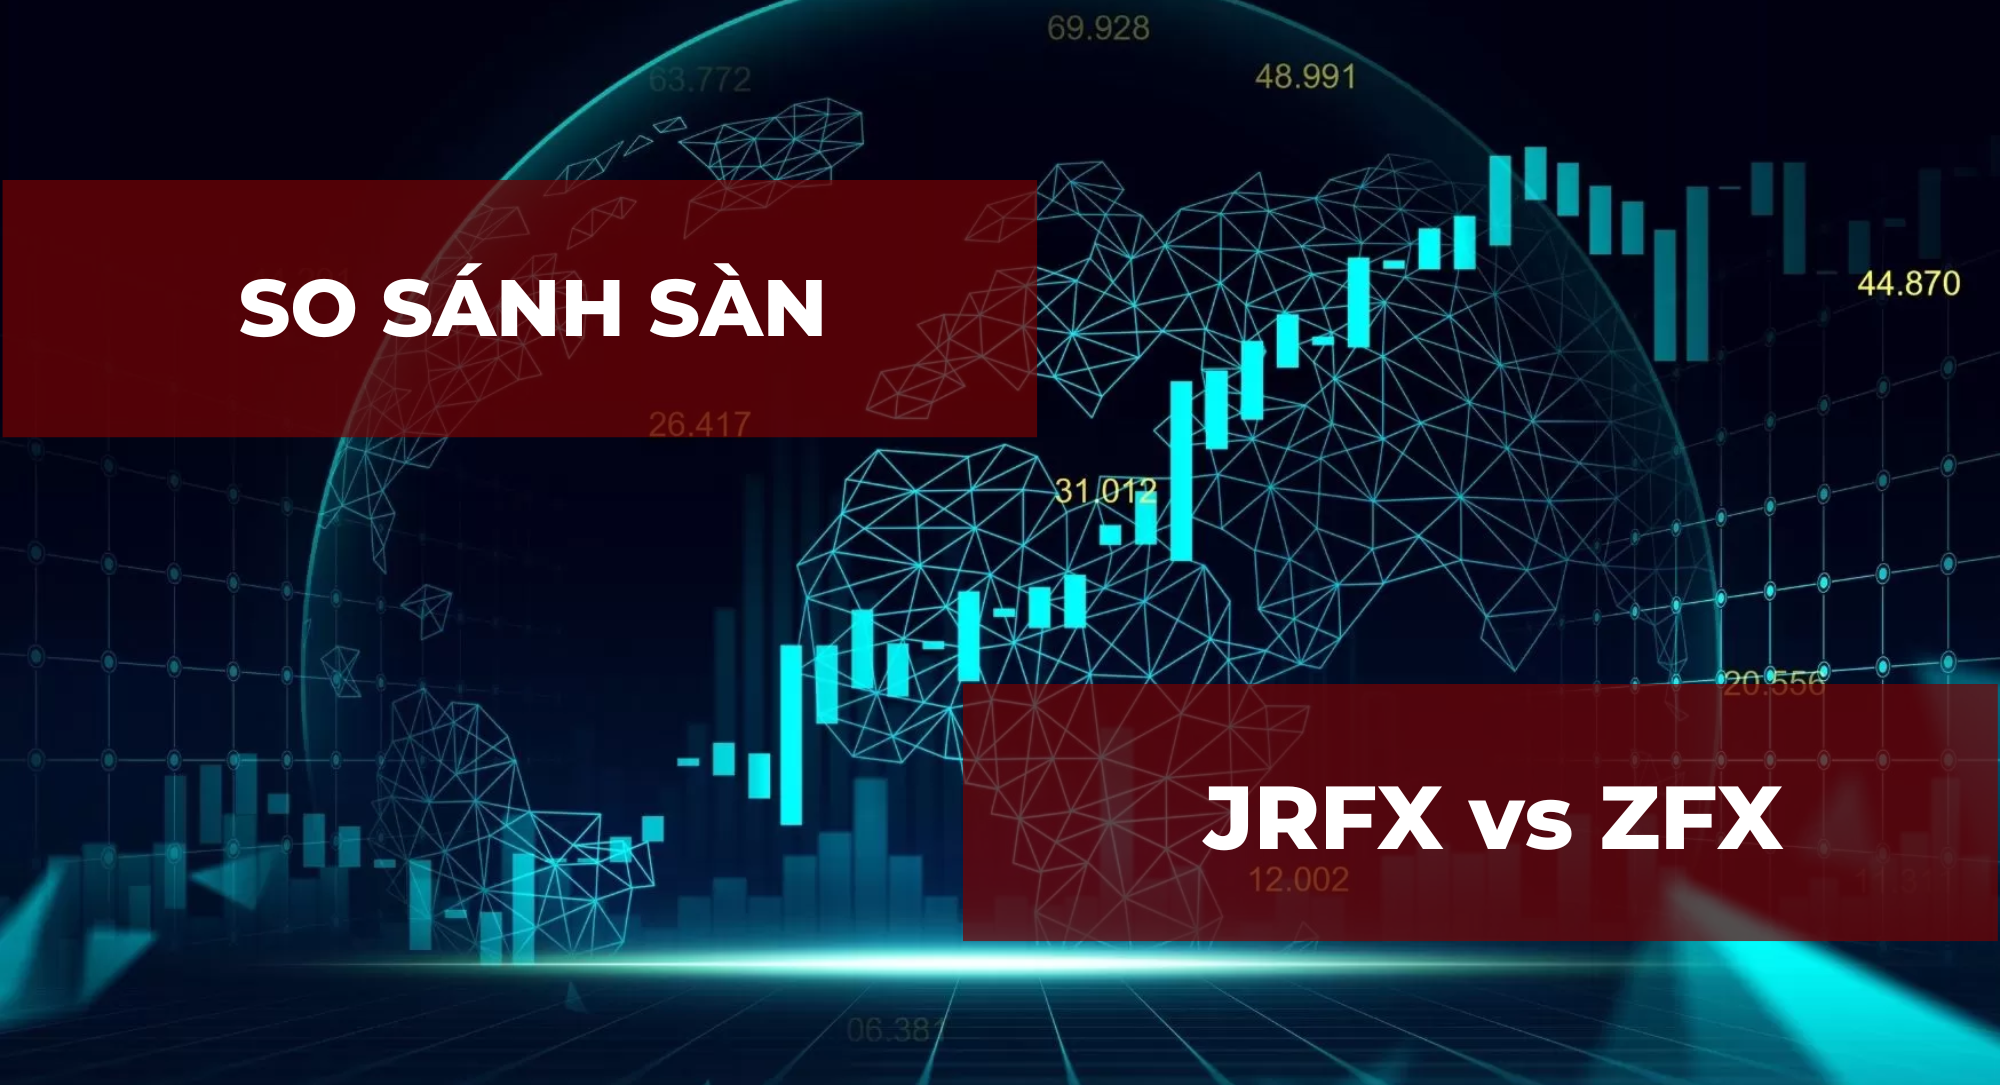 So sánh sàn JRFX và ZFX chi tiết